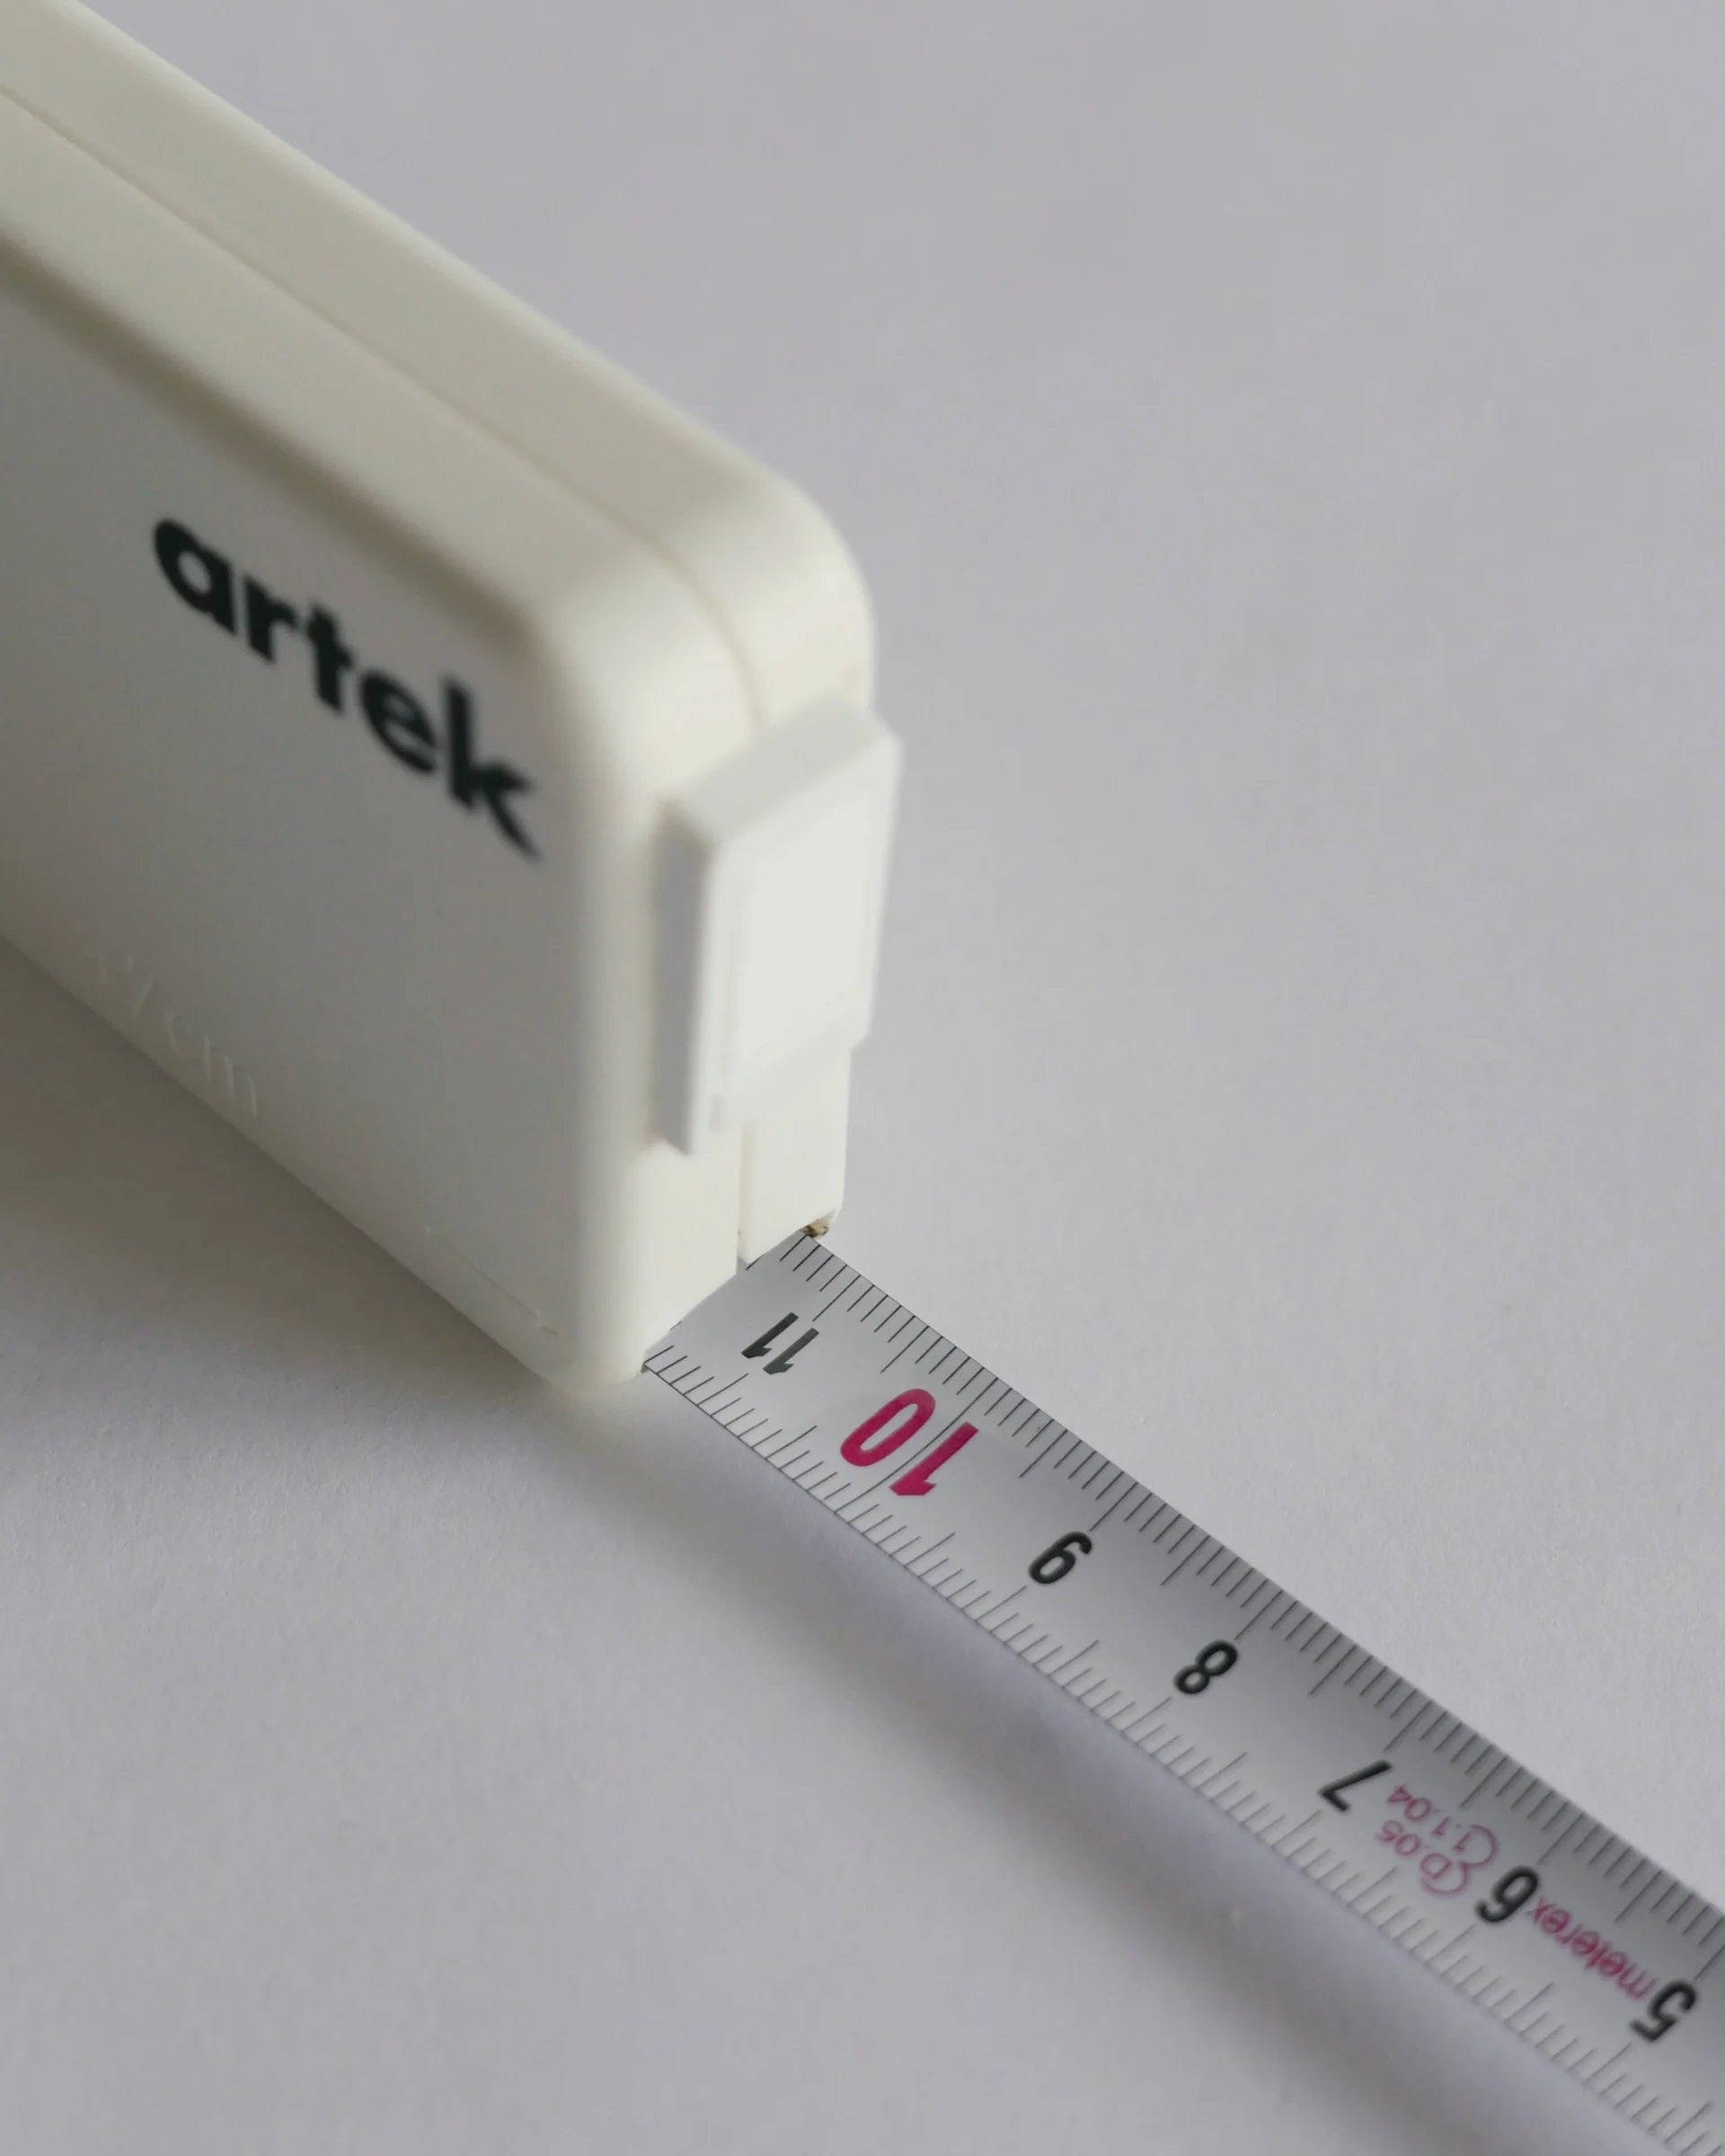 Artek Tape Measure closeup detail